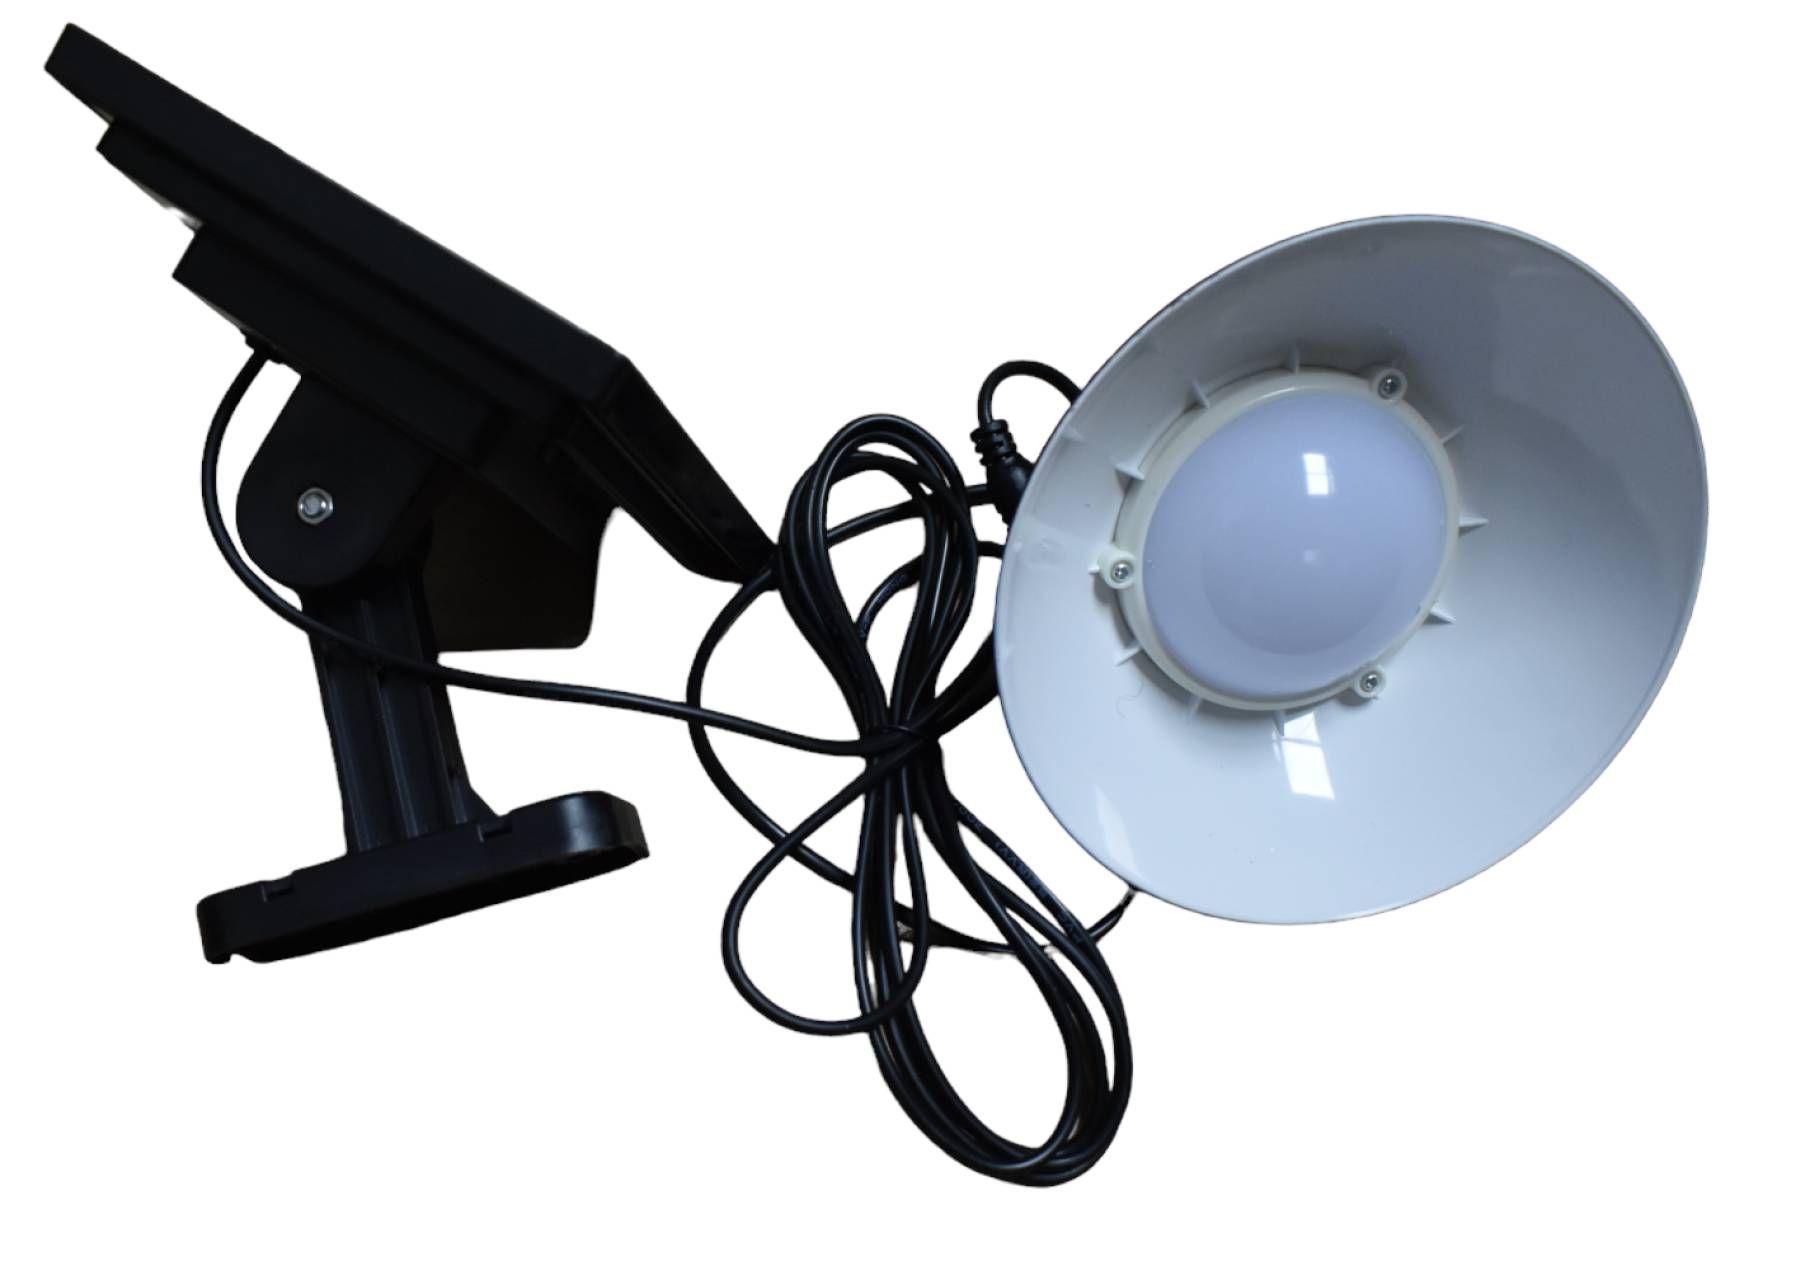 Lampa solara suspendata cu panou solar LED VR8620, 20W, cablu legatura